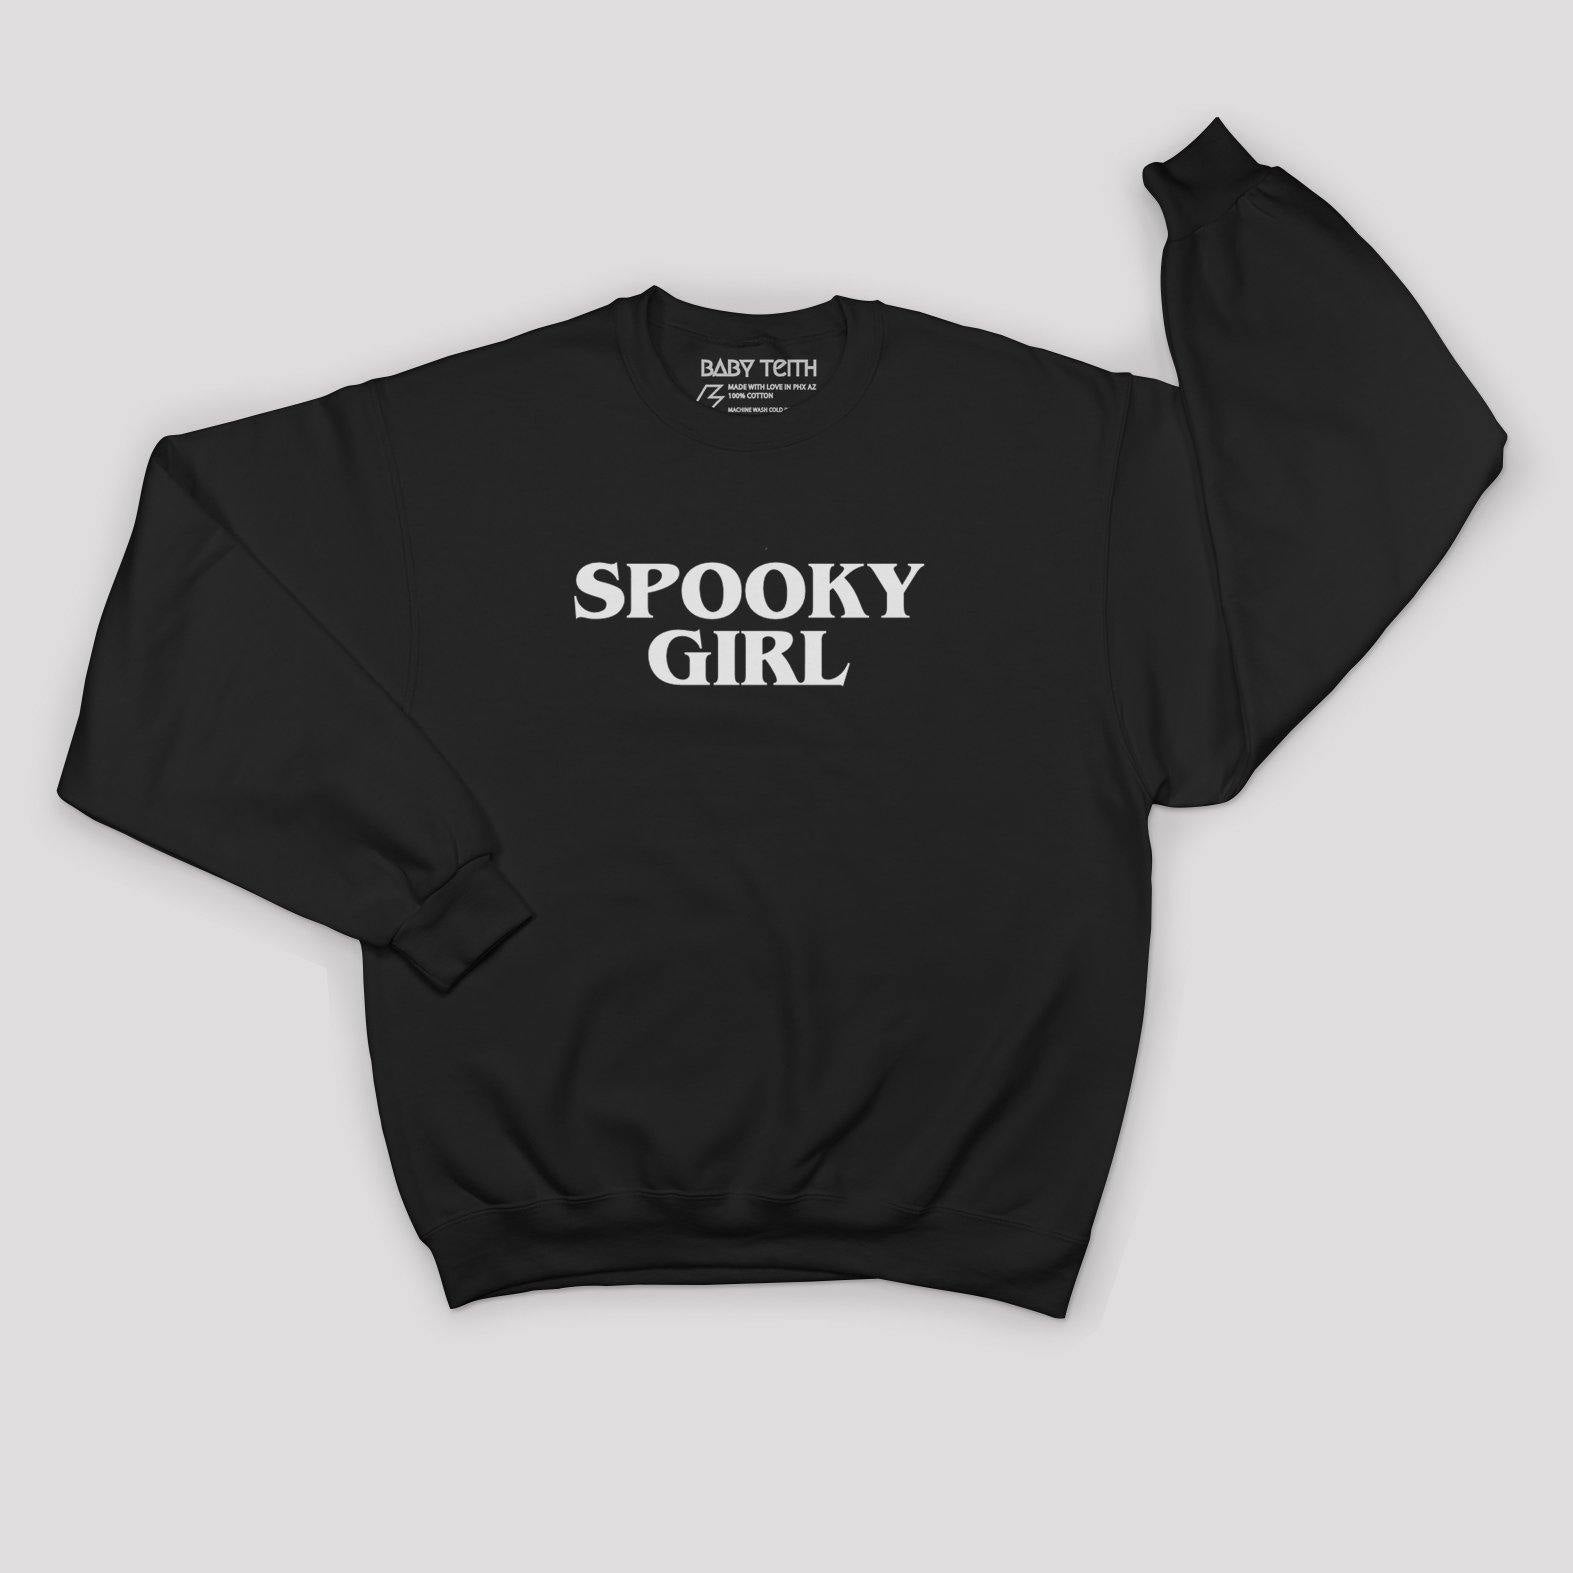 Spooky Girl Sweatshirt for Kids - Baby Teith